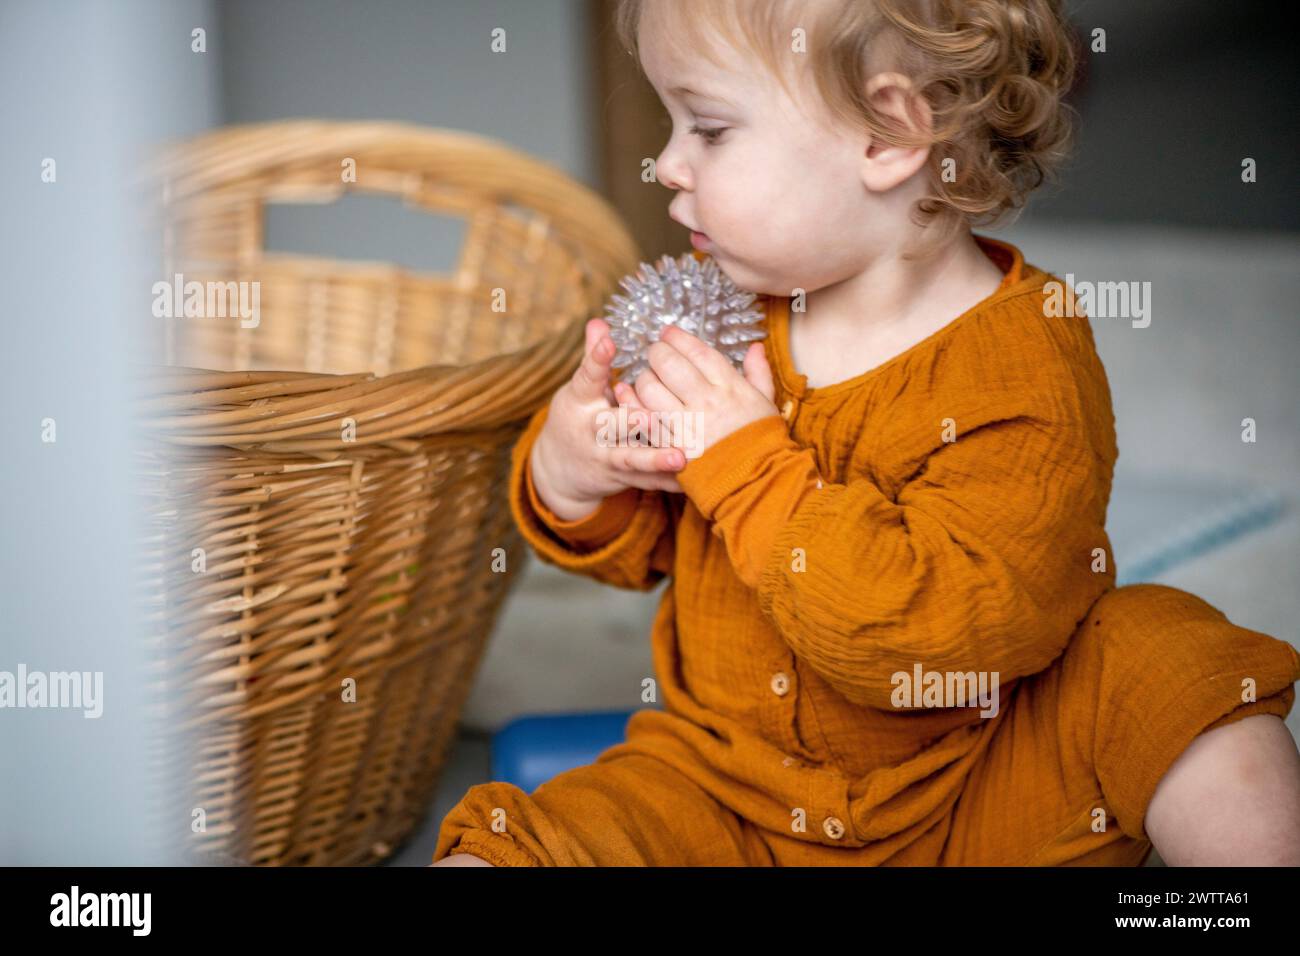 Kleinkind in Ehrfurcht, das eine Blume erforscht Stockfoto